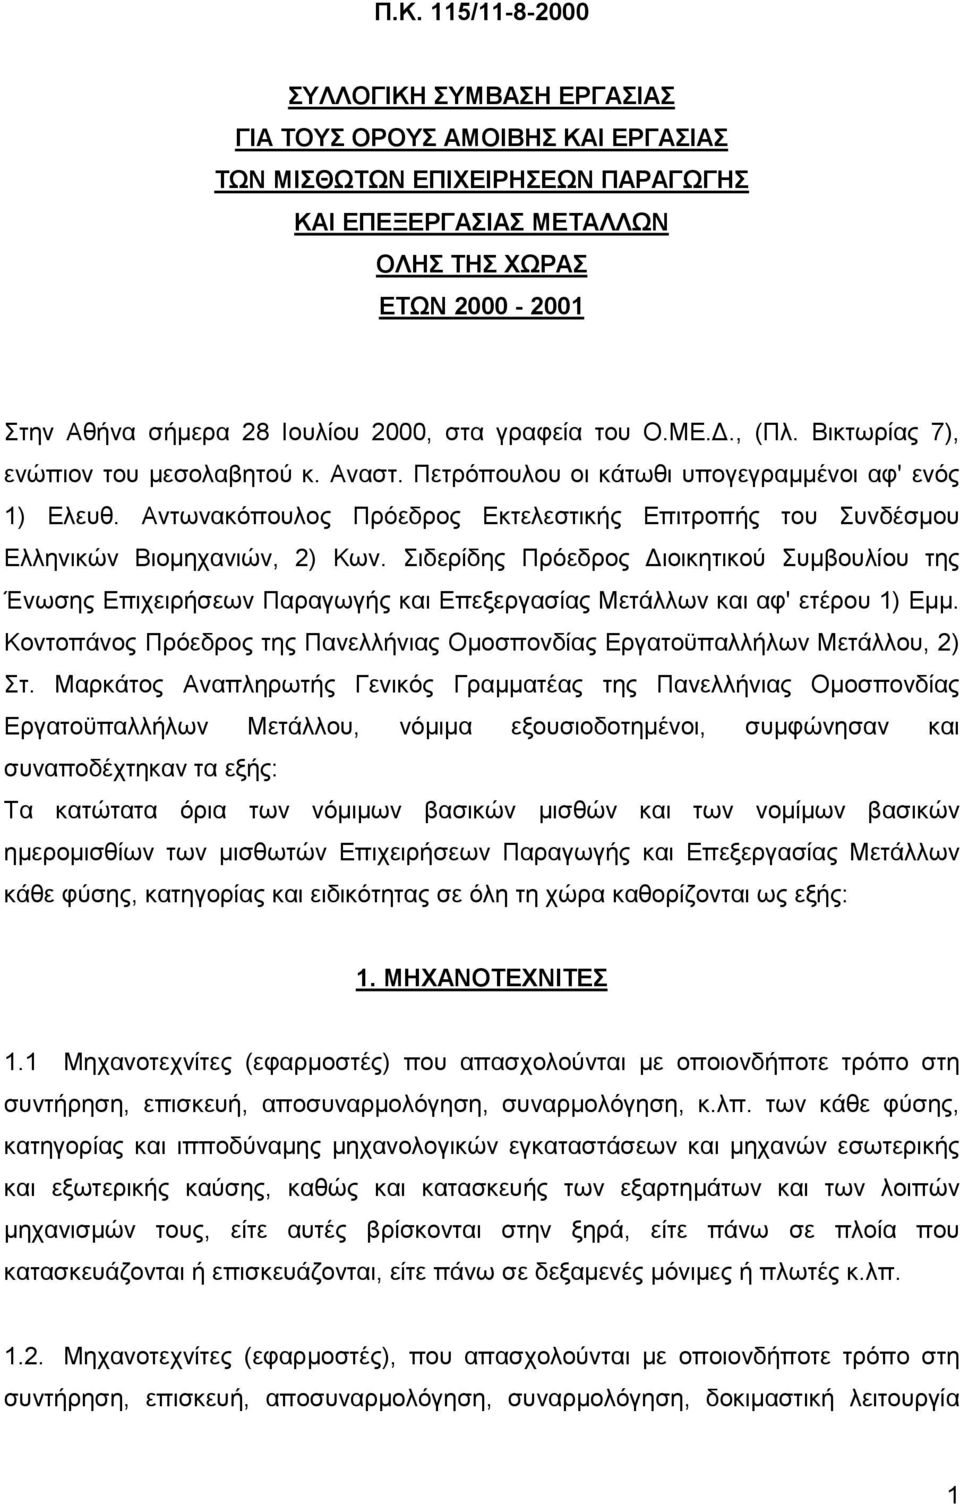 Αντωνακόπουλος Πρόεδρος Εκτελεστικής Επιτροπής του Συνδέσμου Ελληνικών Βιομηχανιών, 2) Κων.